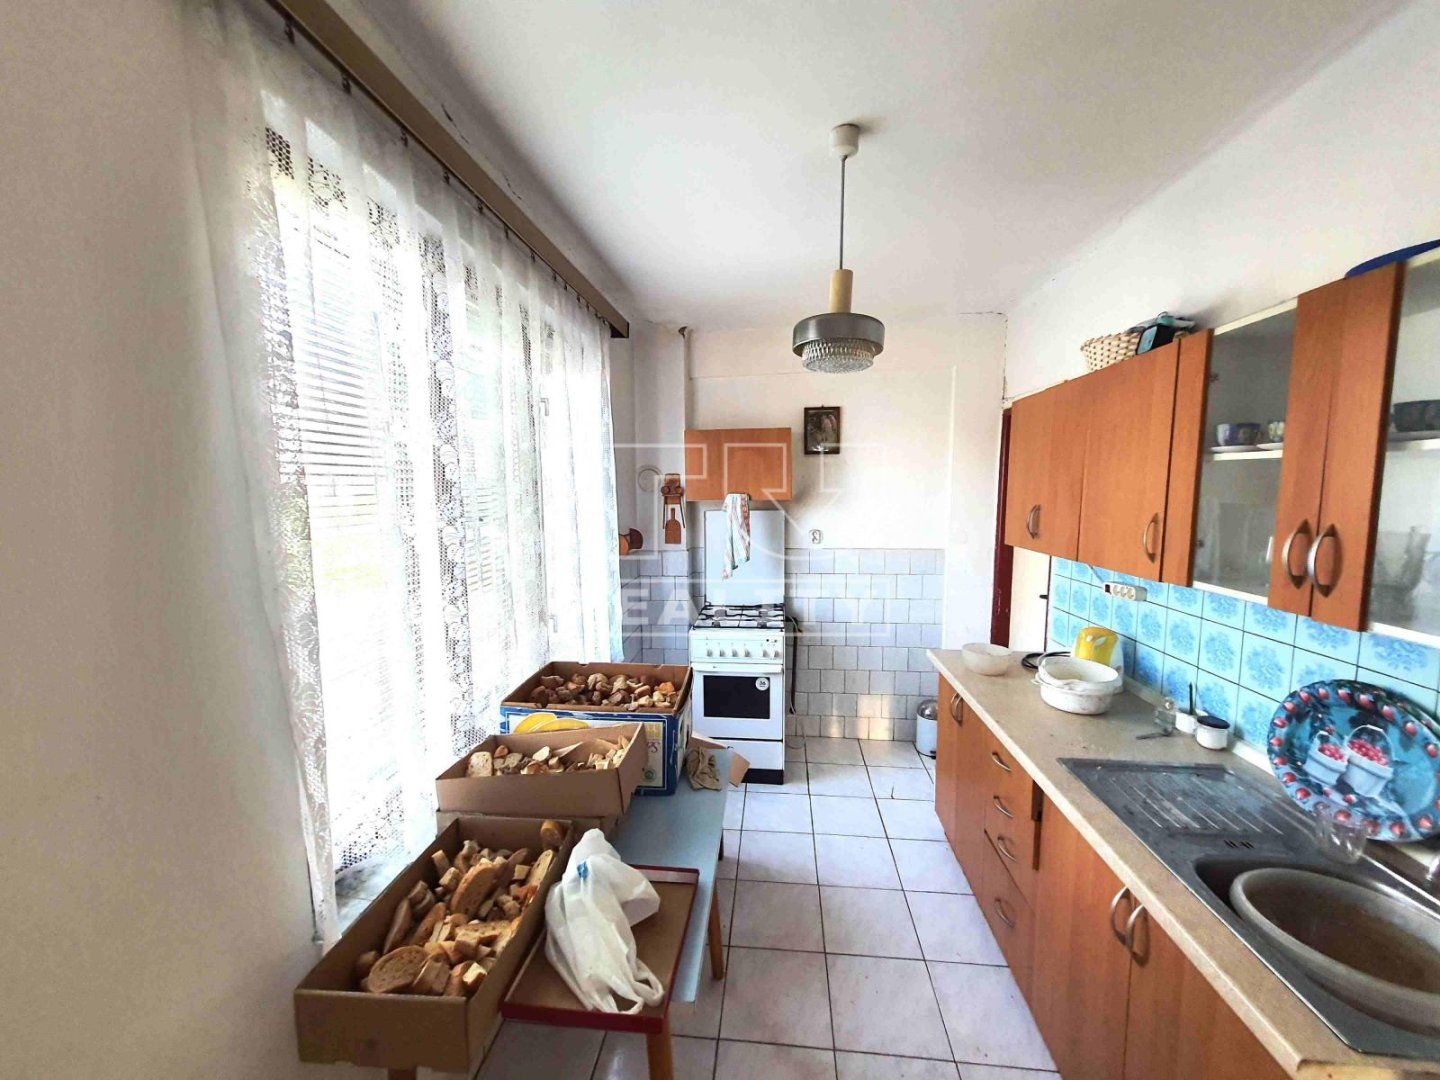 REZERVOVANÉ!!!Na predaj  3 izbový rodinný dom postavený na krásnom pozemku 1900 m2 v tichej časti obce Nitrianska Blatnica